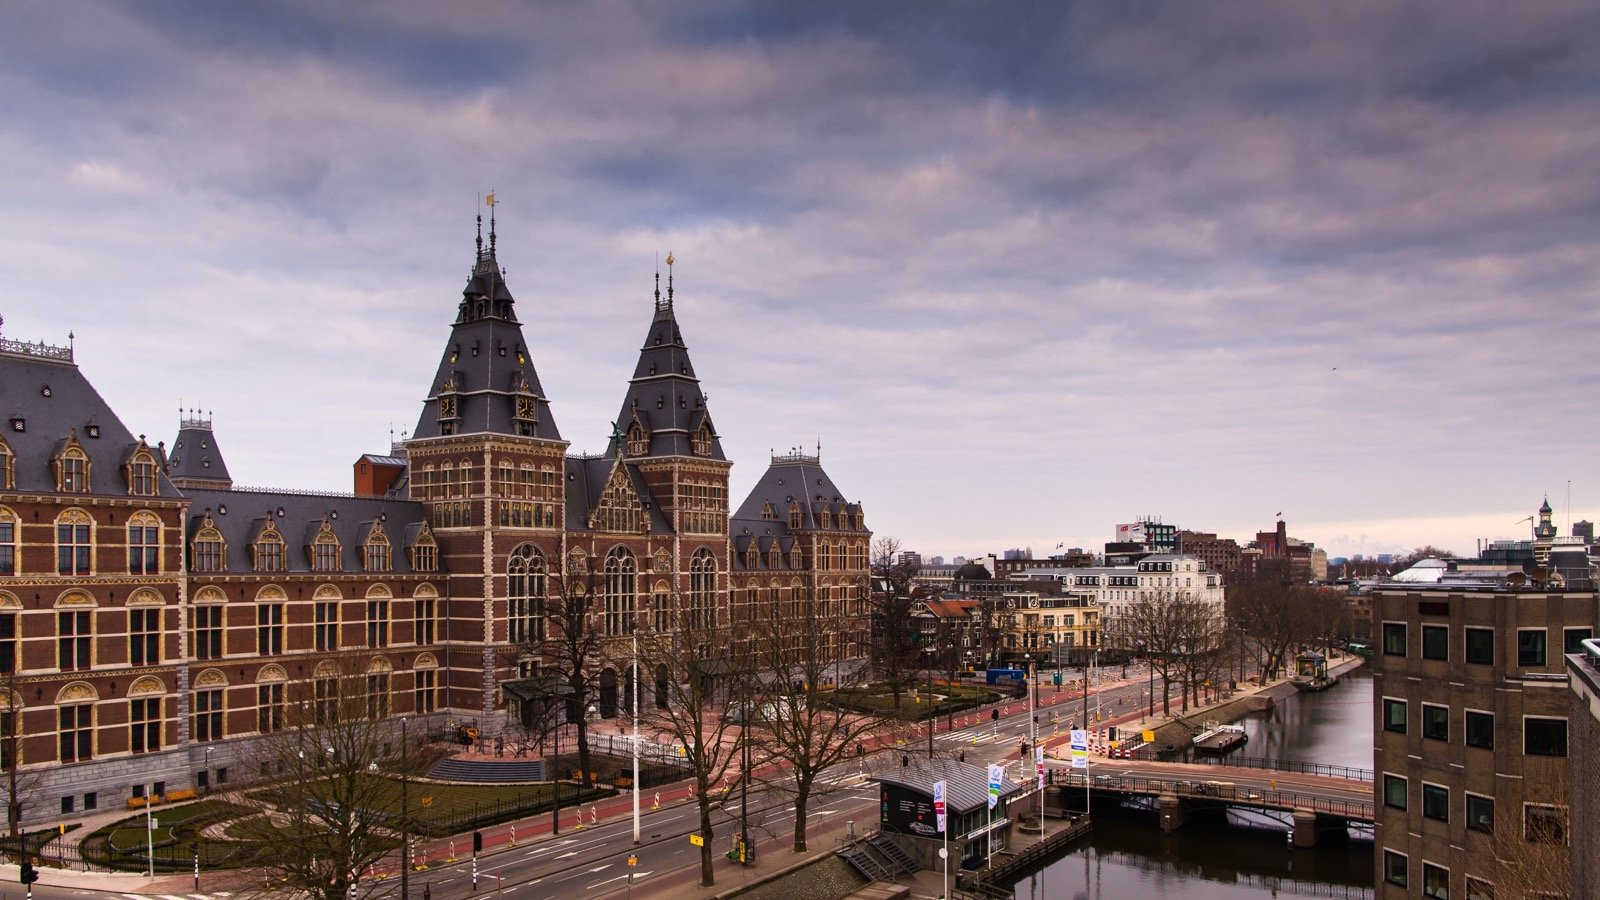 荷兰国立图书馆高清动态heic壁纸